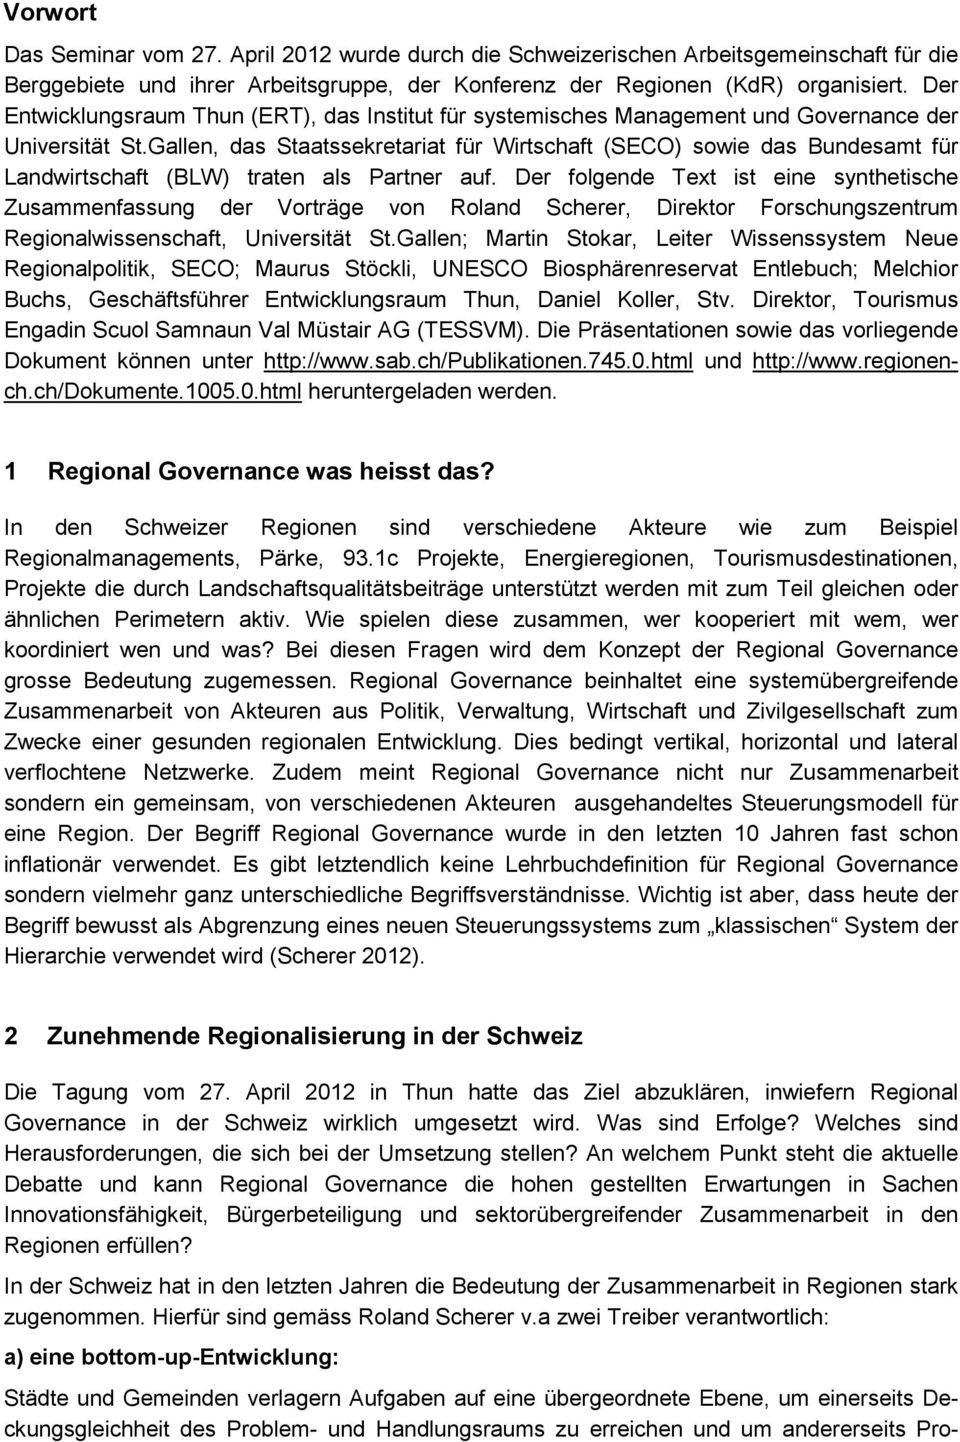 Gallen, das Staatssekretariat für Wirtschaft (SECO) sowie das Bundesamt für Landwirtschaft (BLW) traten als Partner auf.